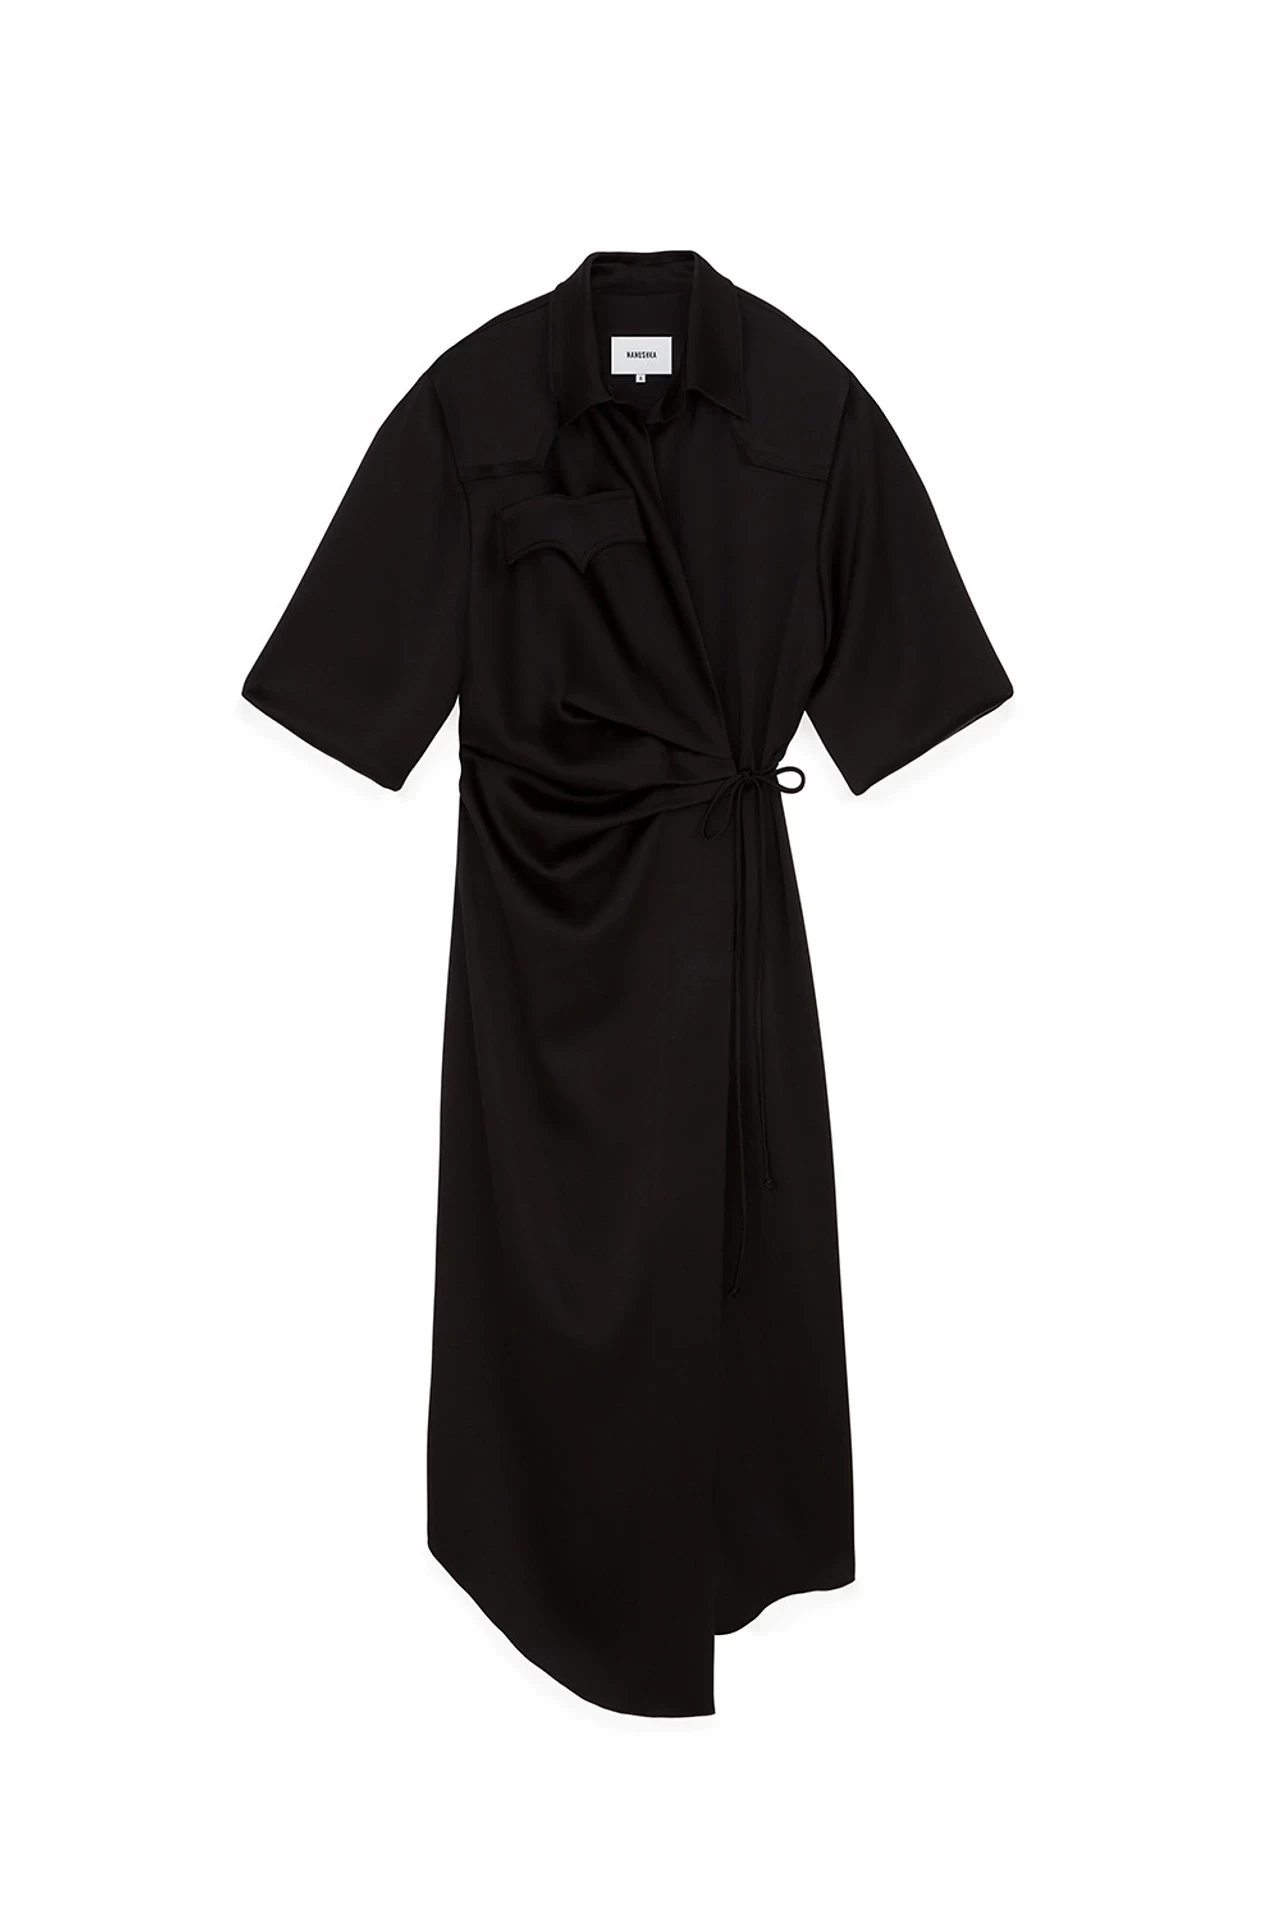 nanushka-lais-draped-front-shirt-dress-black-12370ede46b86ac9304f3db8c3fb.webp